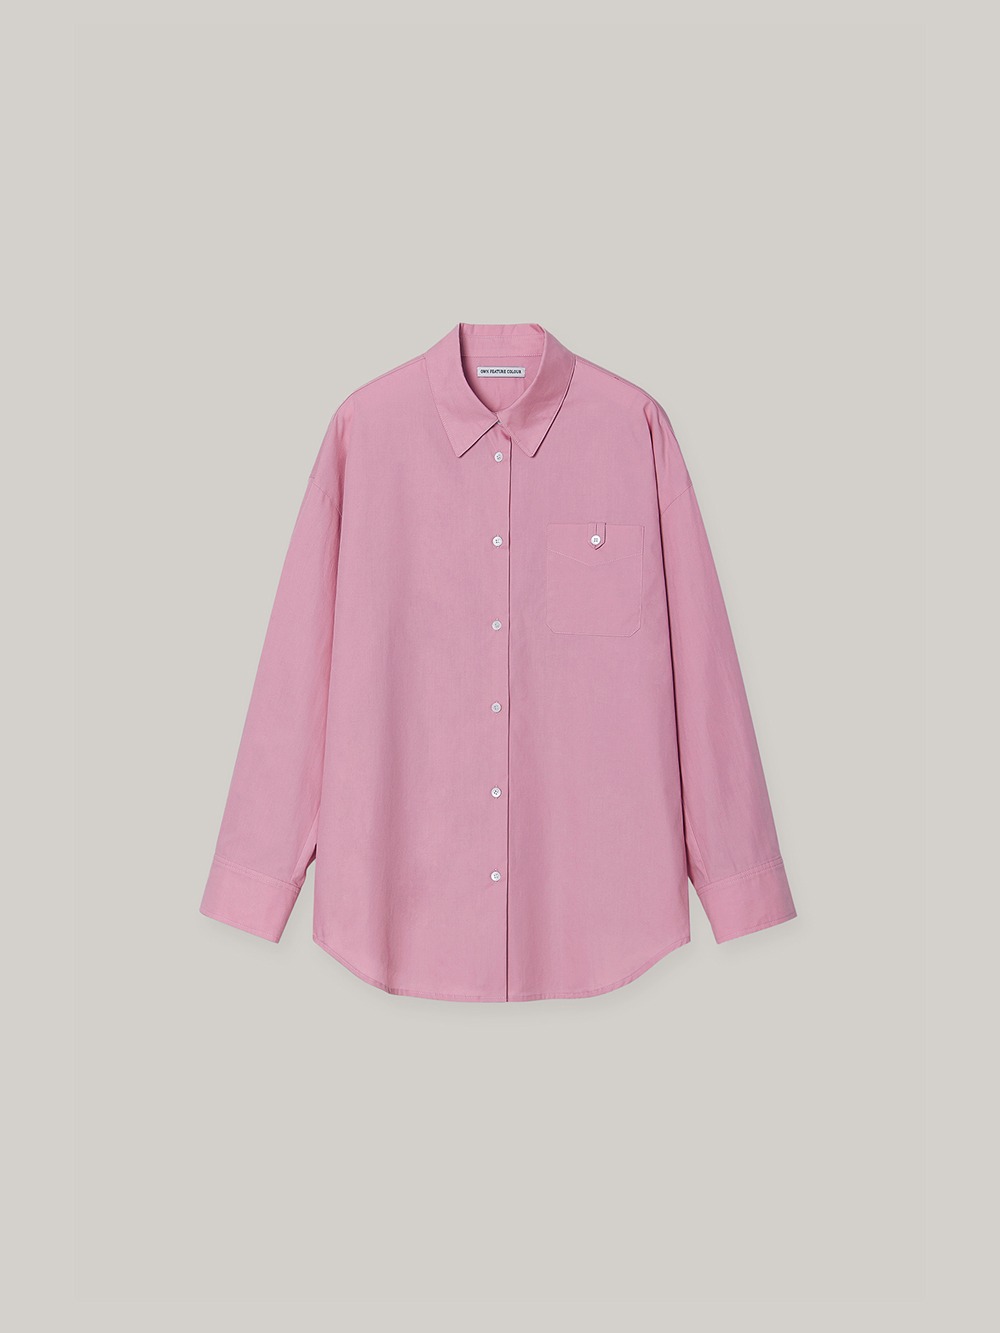 Paper Shirt (pink)